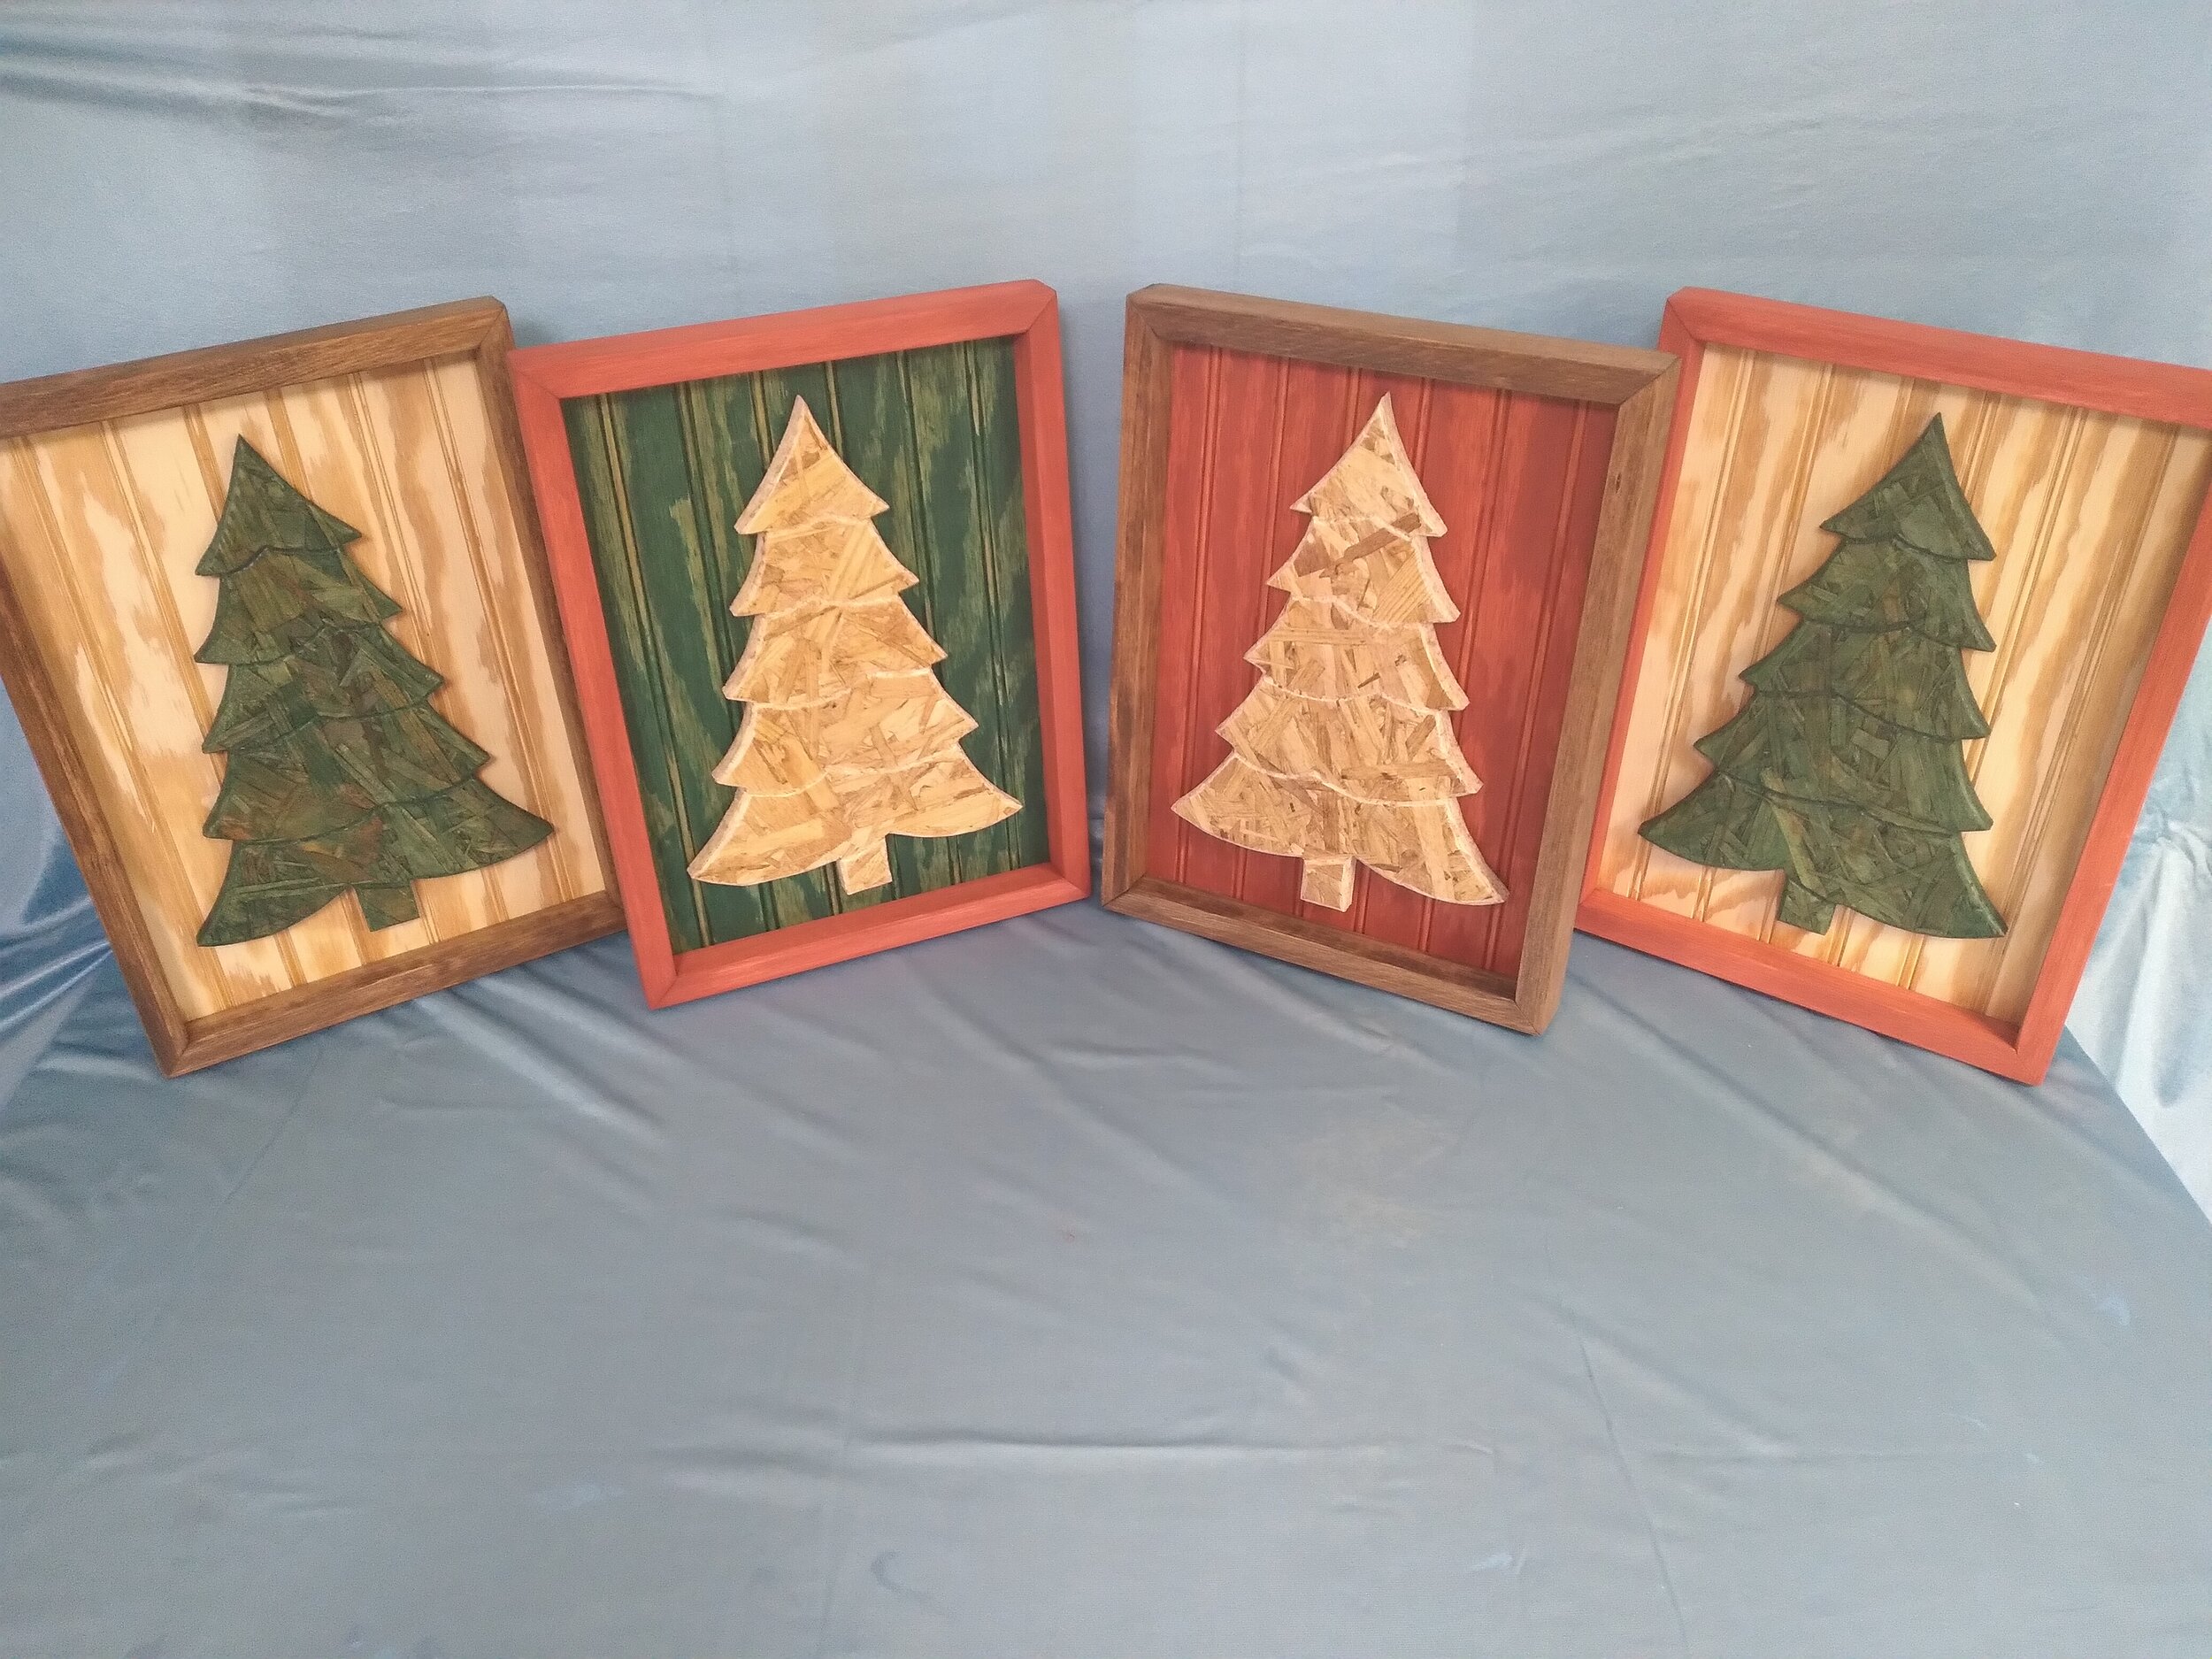 Framed Wooden Christmas Trees